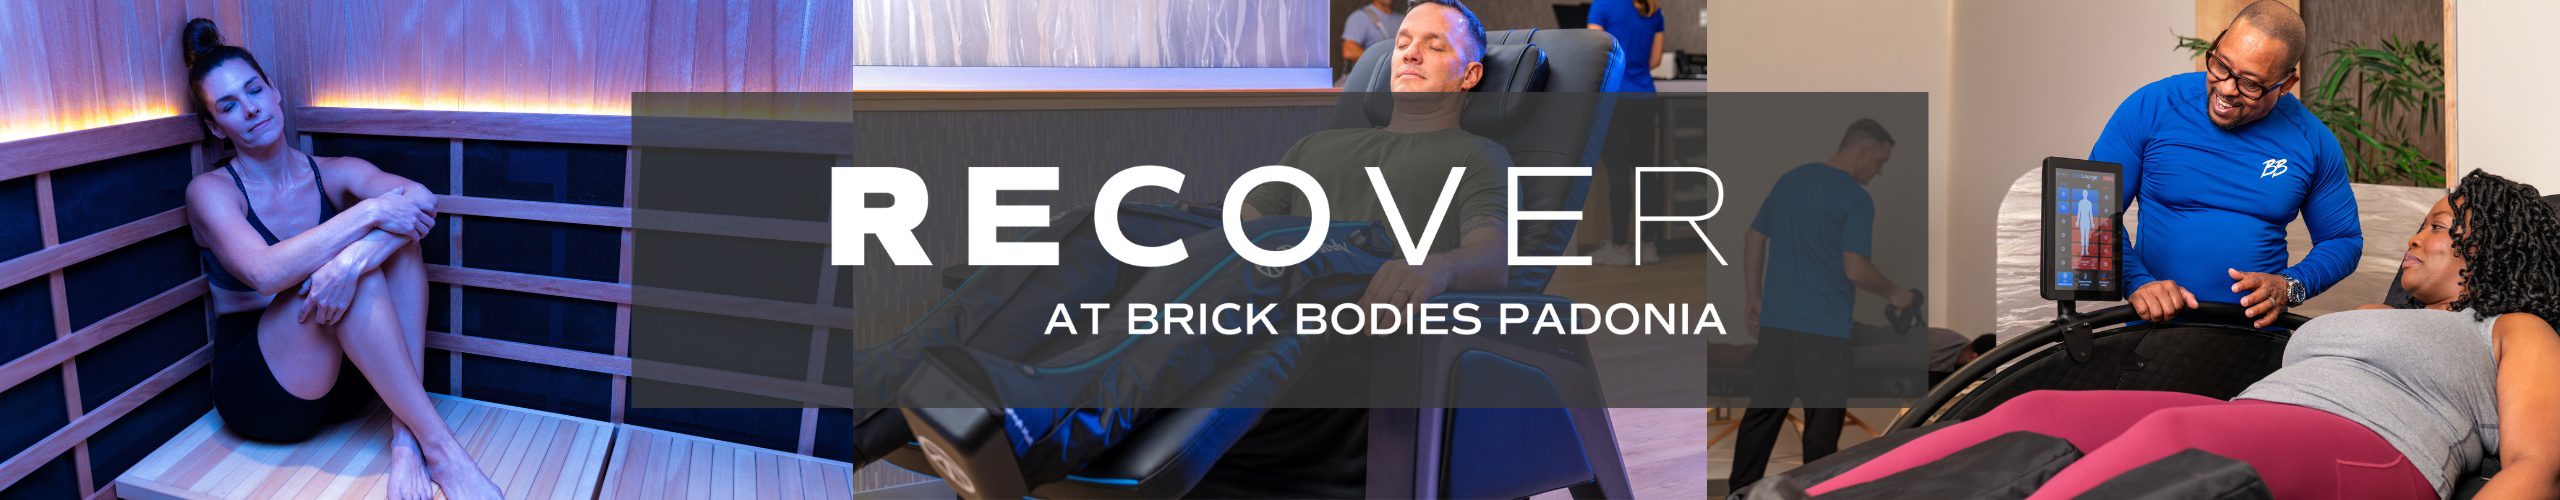 recover at brick bodies padonia